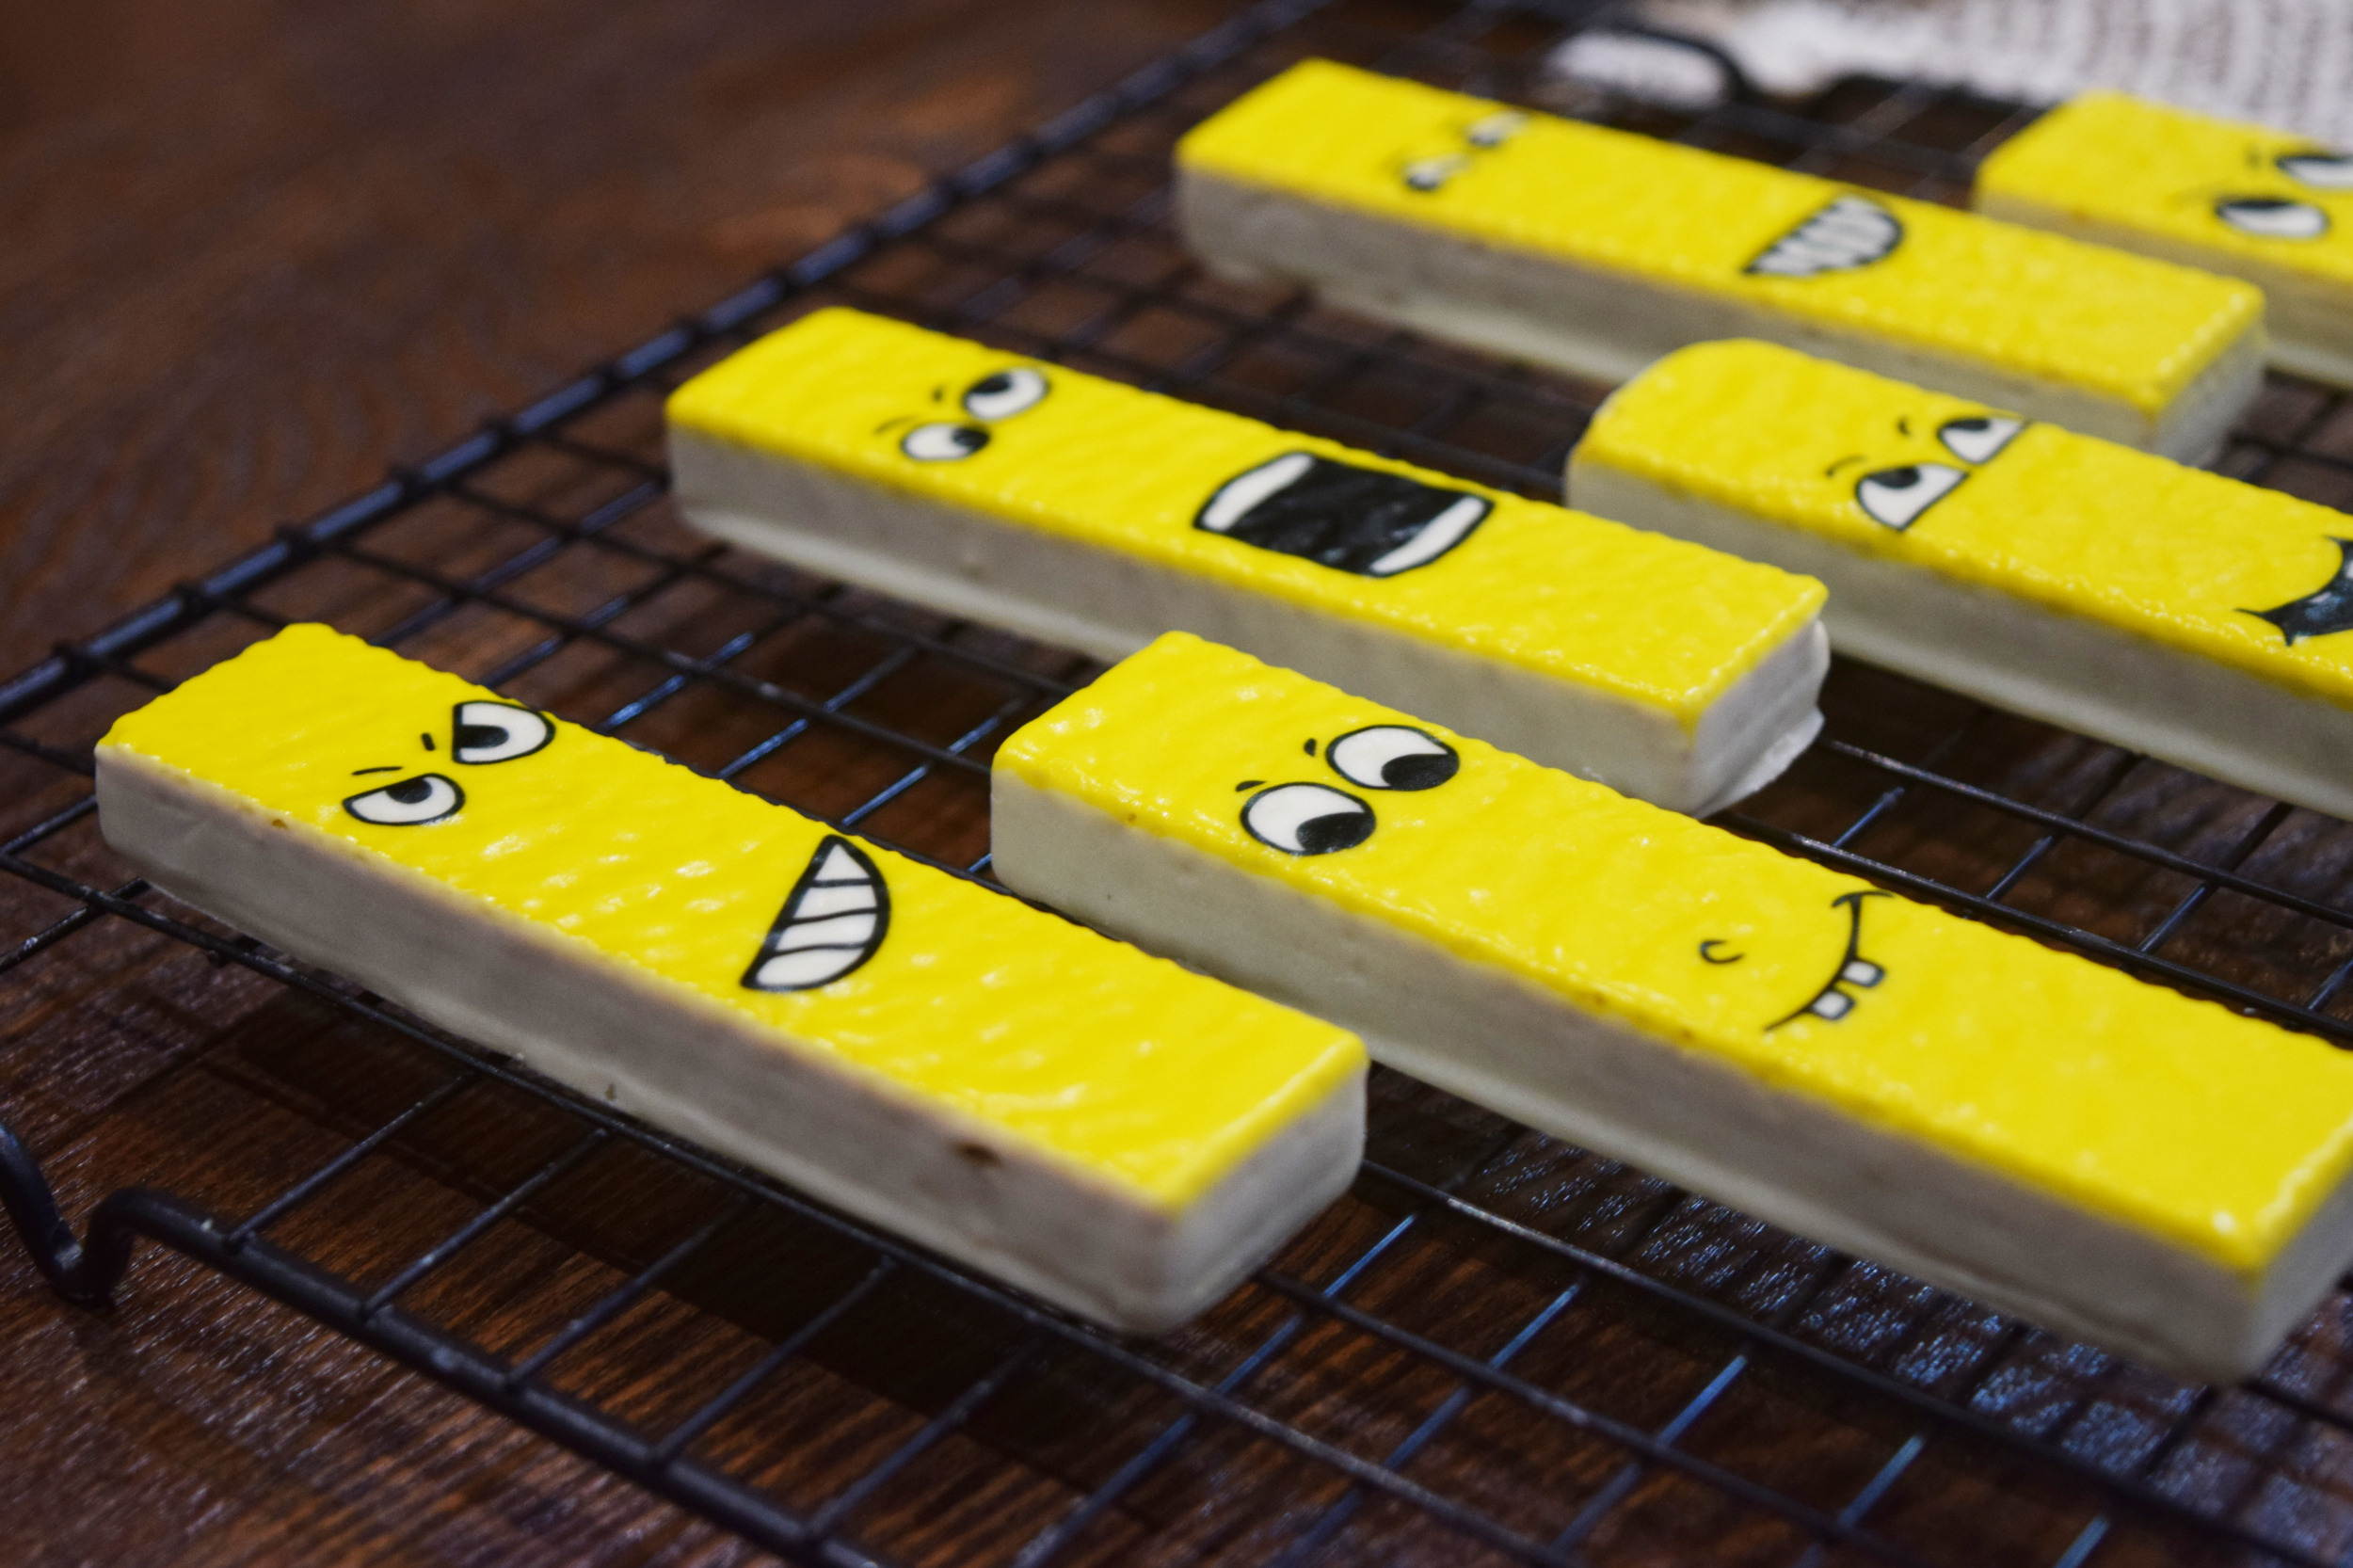 La impresora de alimentos plana A2C imprime galletas de oblea con cobertura de chocolate.